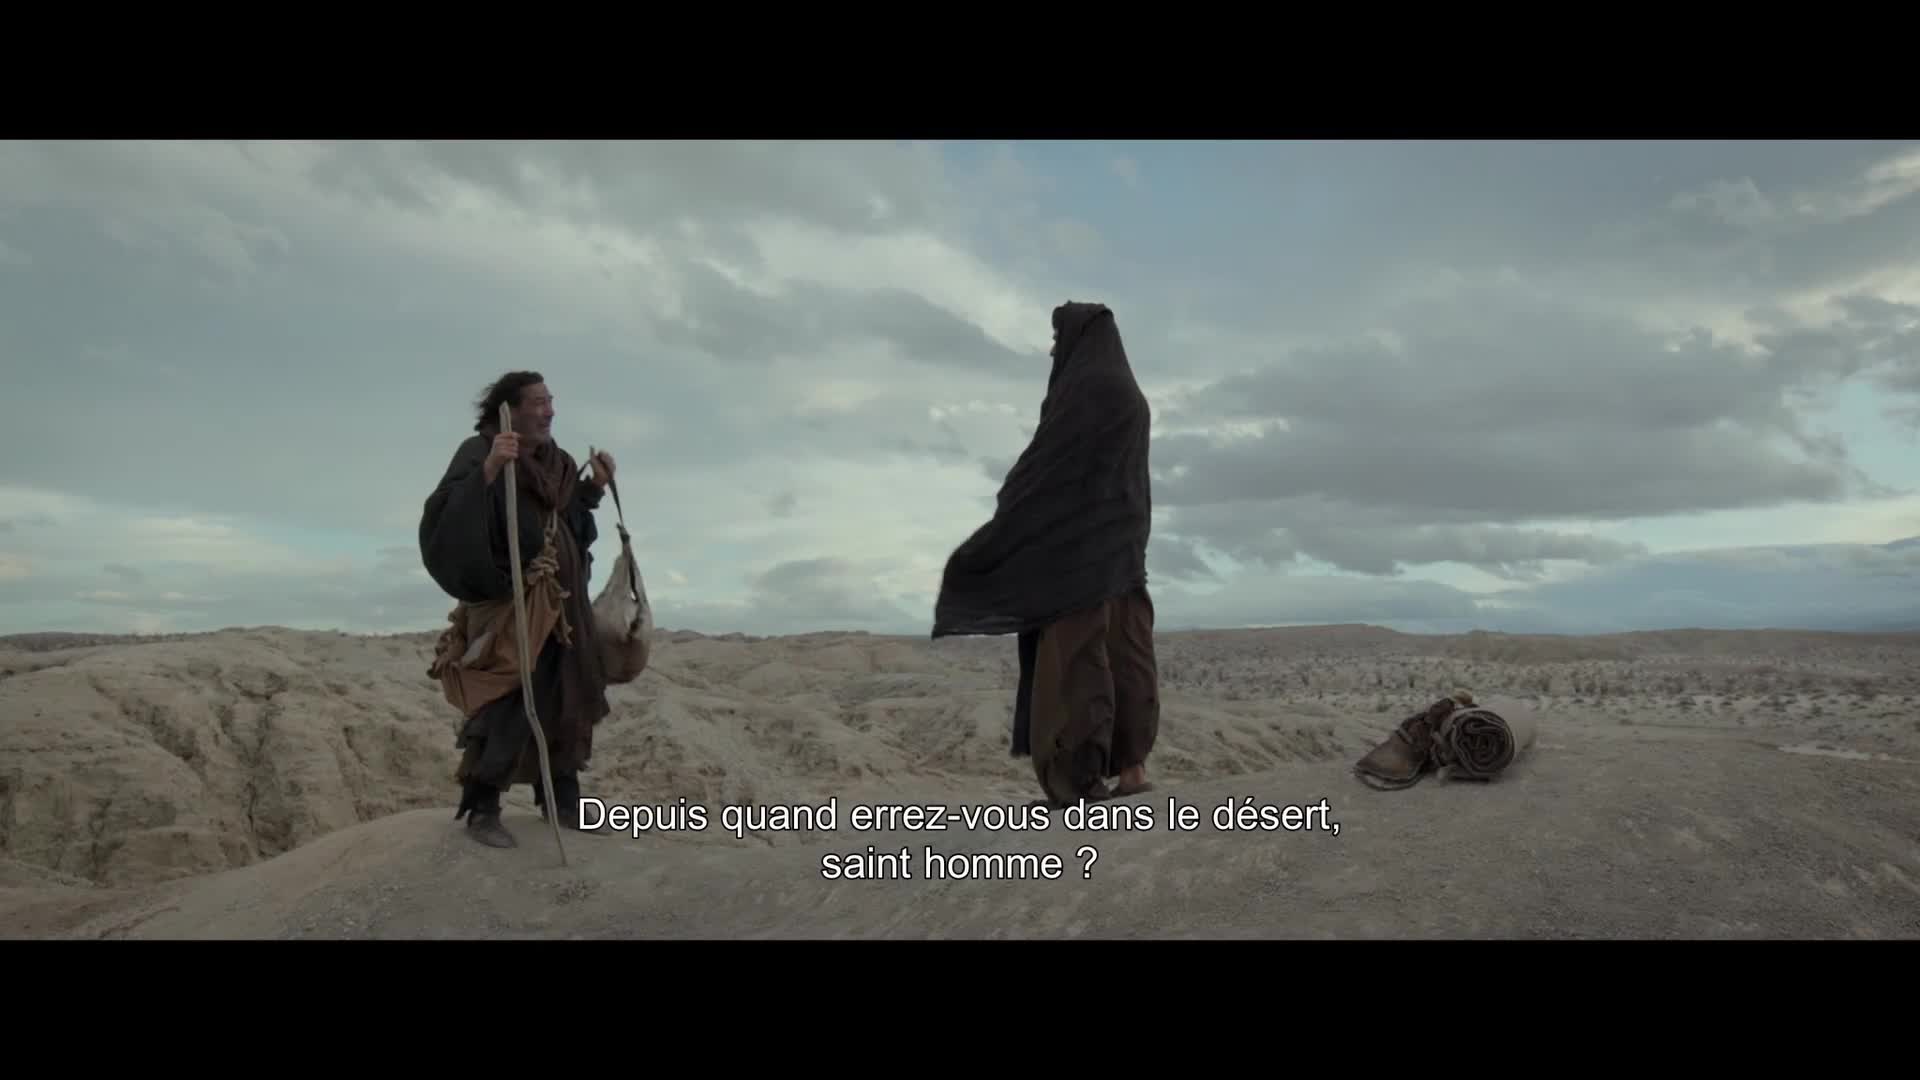 Extrait vidéo du film  Les Derniers jours dans le désert